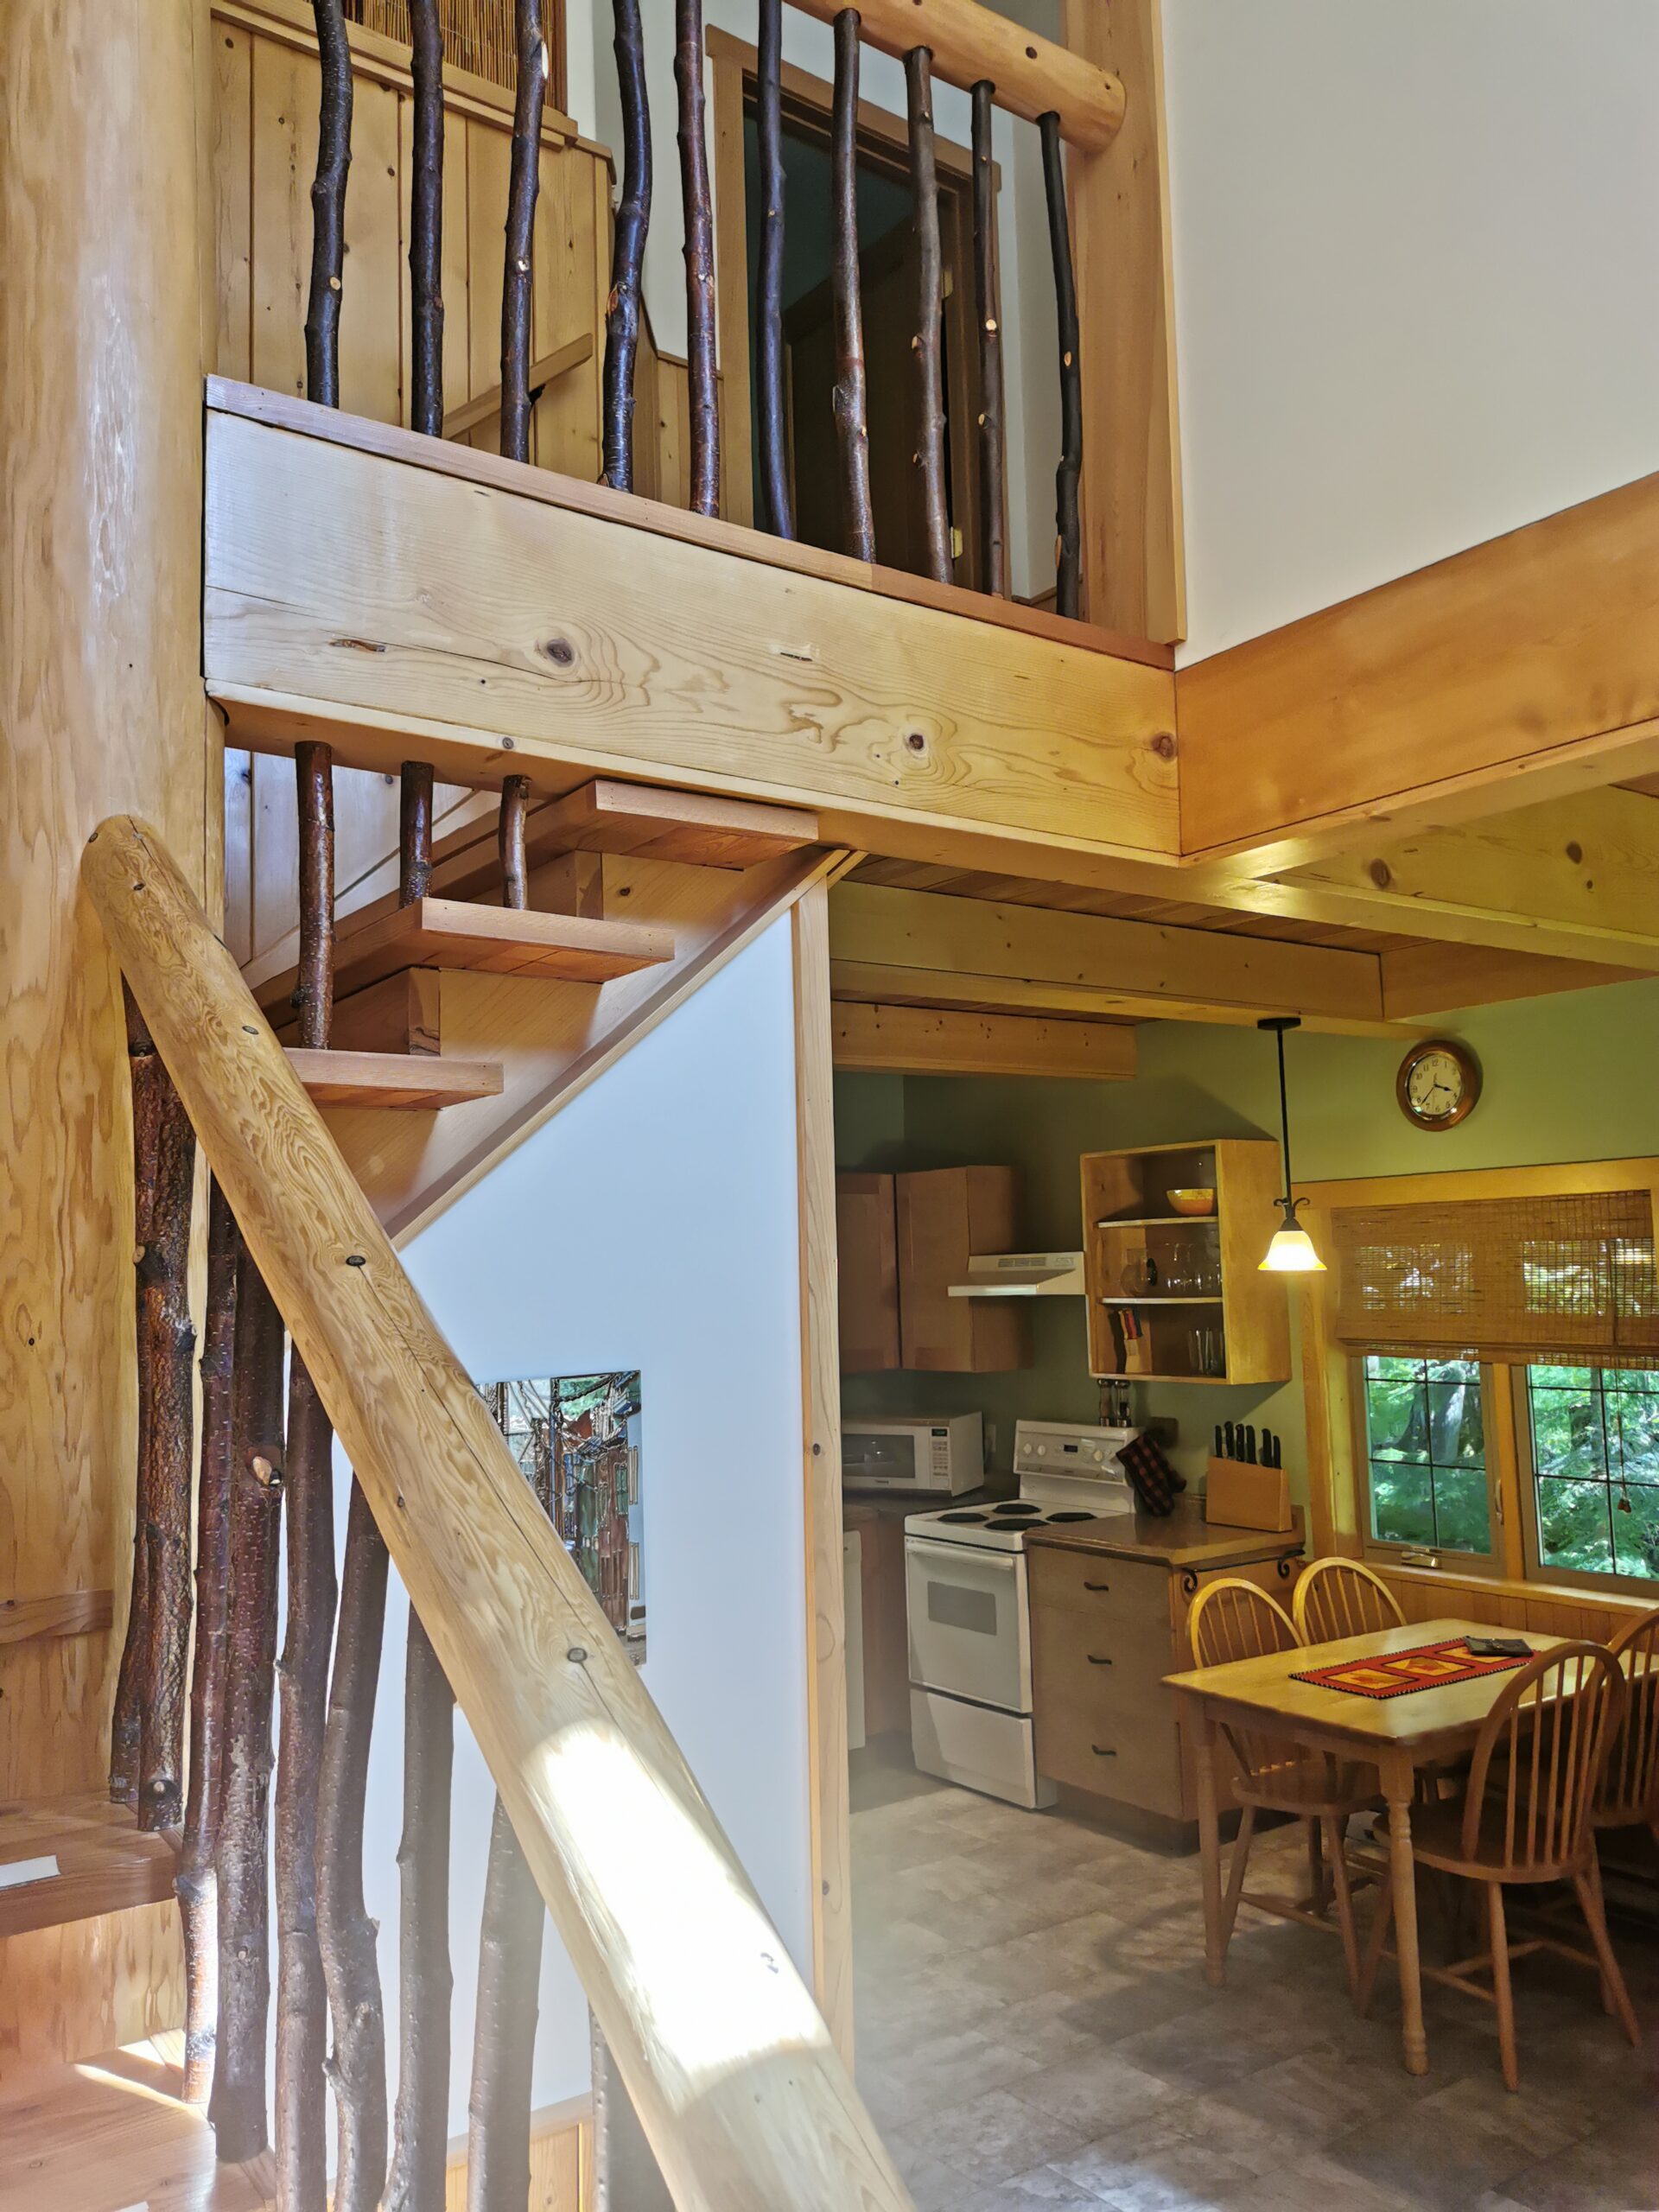 Entrance and kitchen at Kingfisher cabin at Kootenay Lake